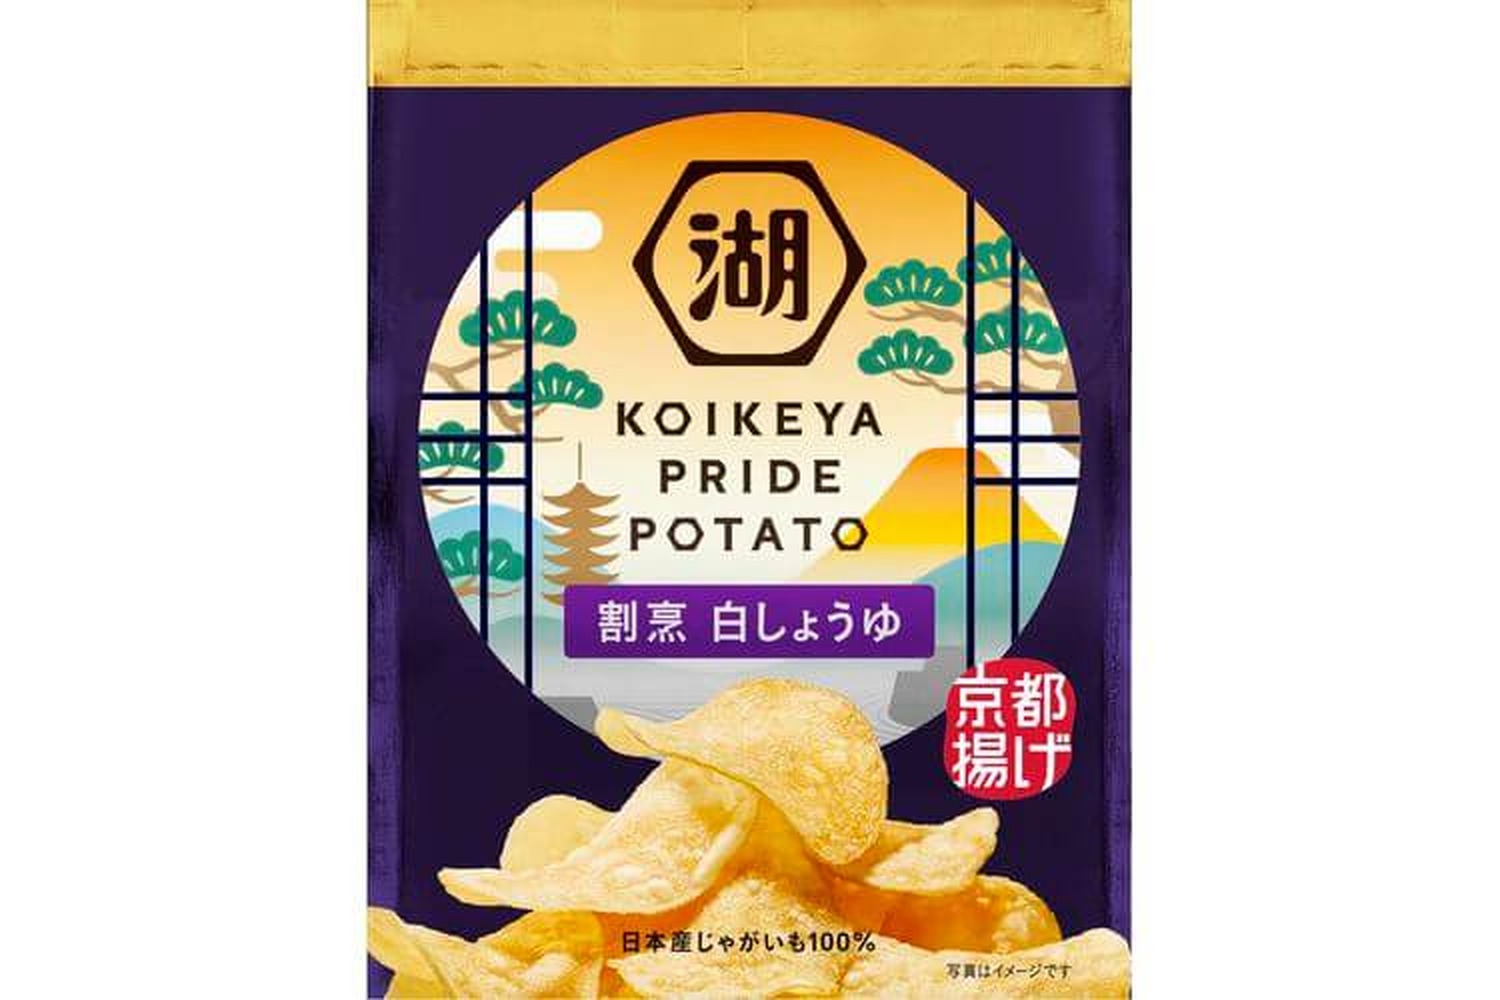 Koikeya-pride-Potato